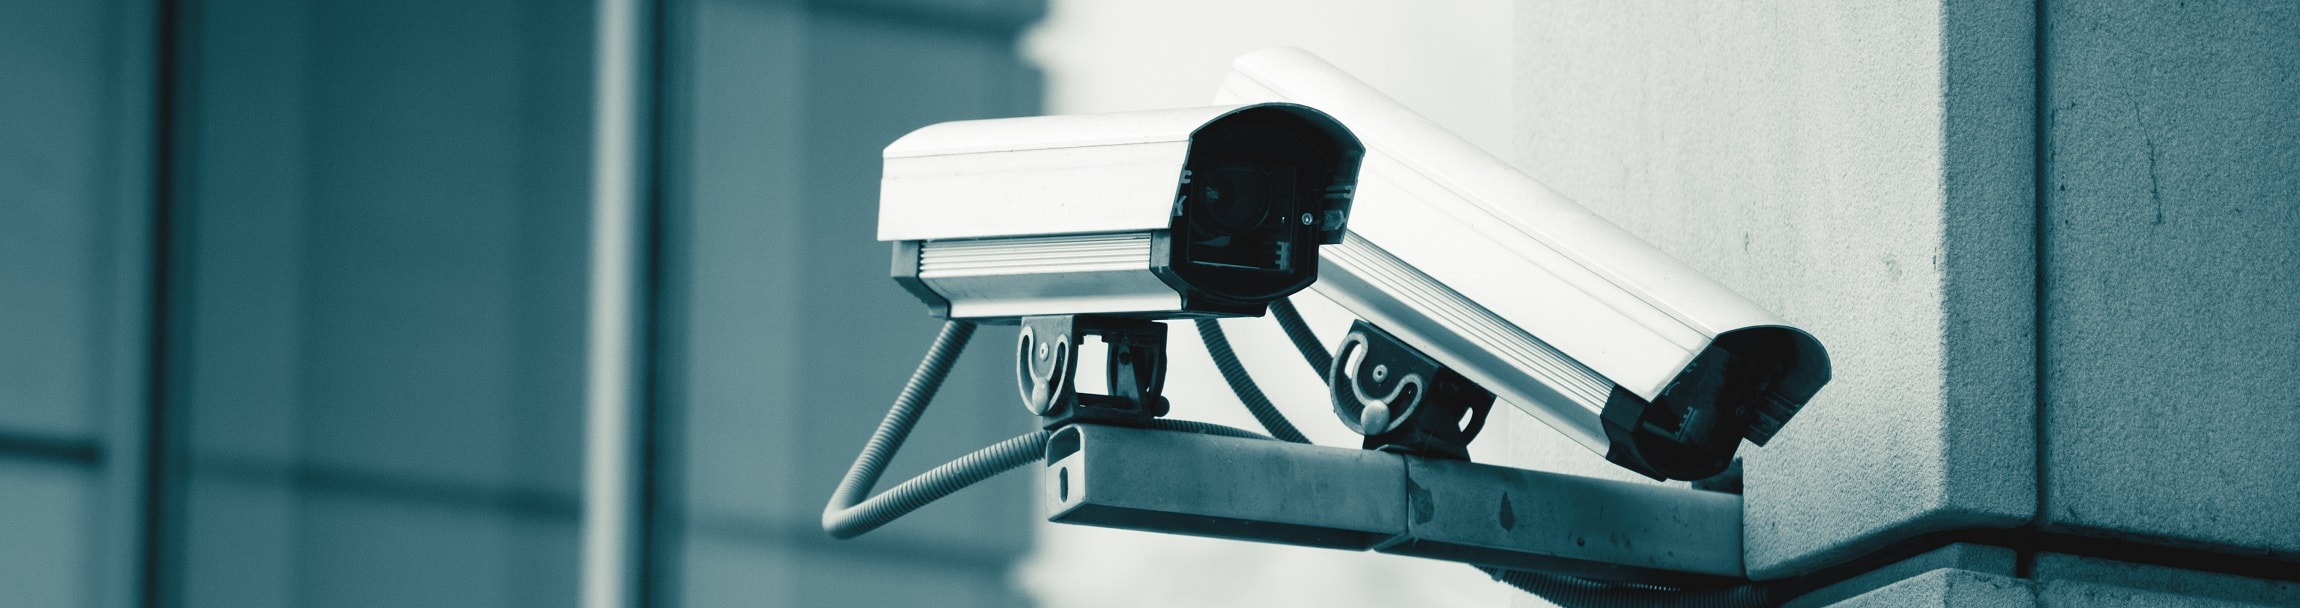 Vi har ett brett sortiment och stor kunskap om kameraövervakning - Larm & Säkerhet